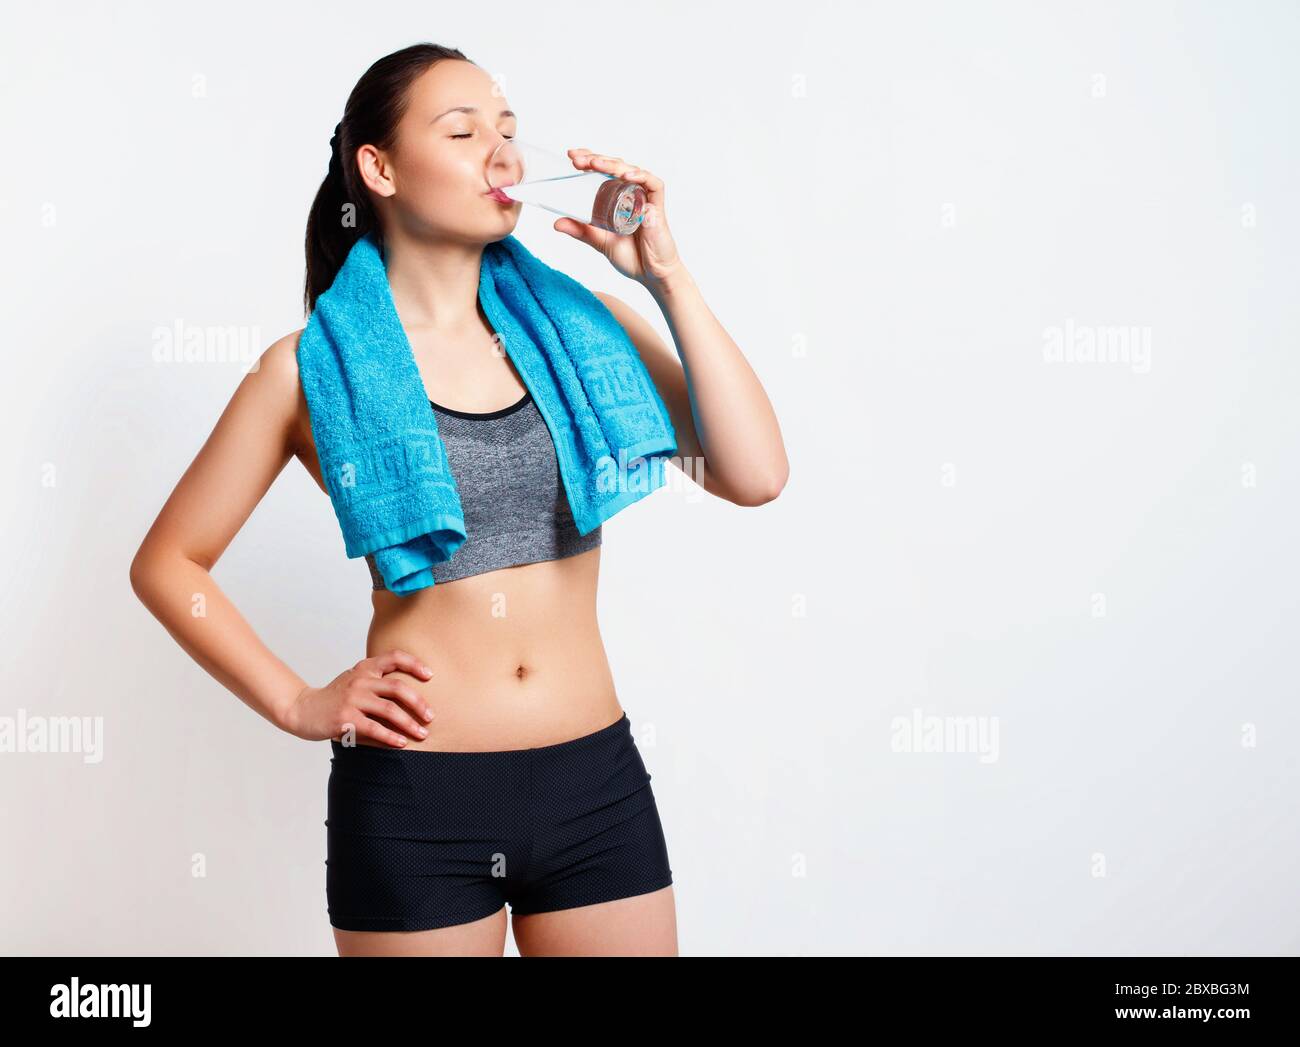 après l'entraînement, la femme boit de l'eau sur un verre. sur fond blanc. Banque D'Images